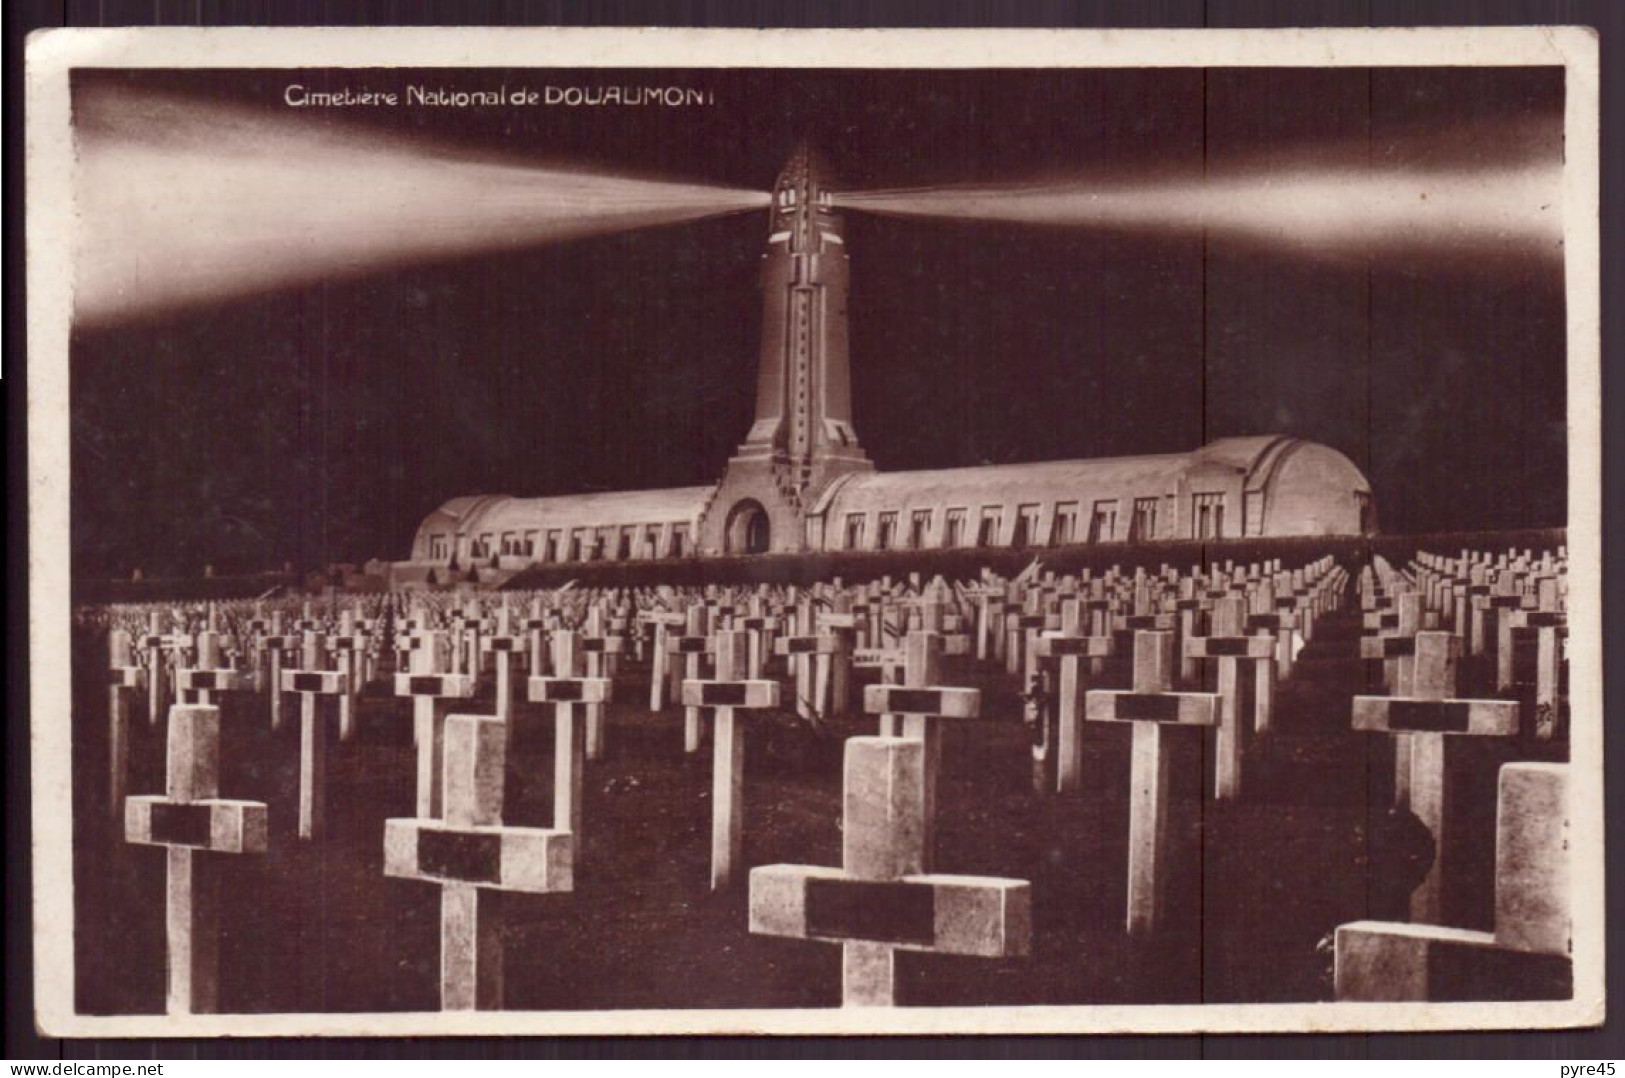 CIMETIERE NATIONAL DE DOUAUMONT - War Cemeteries